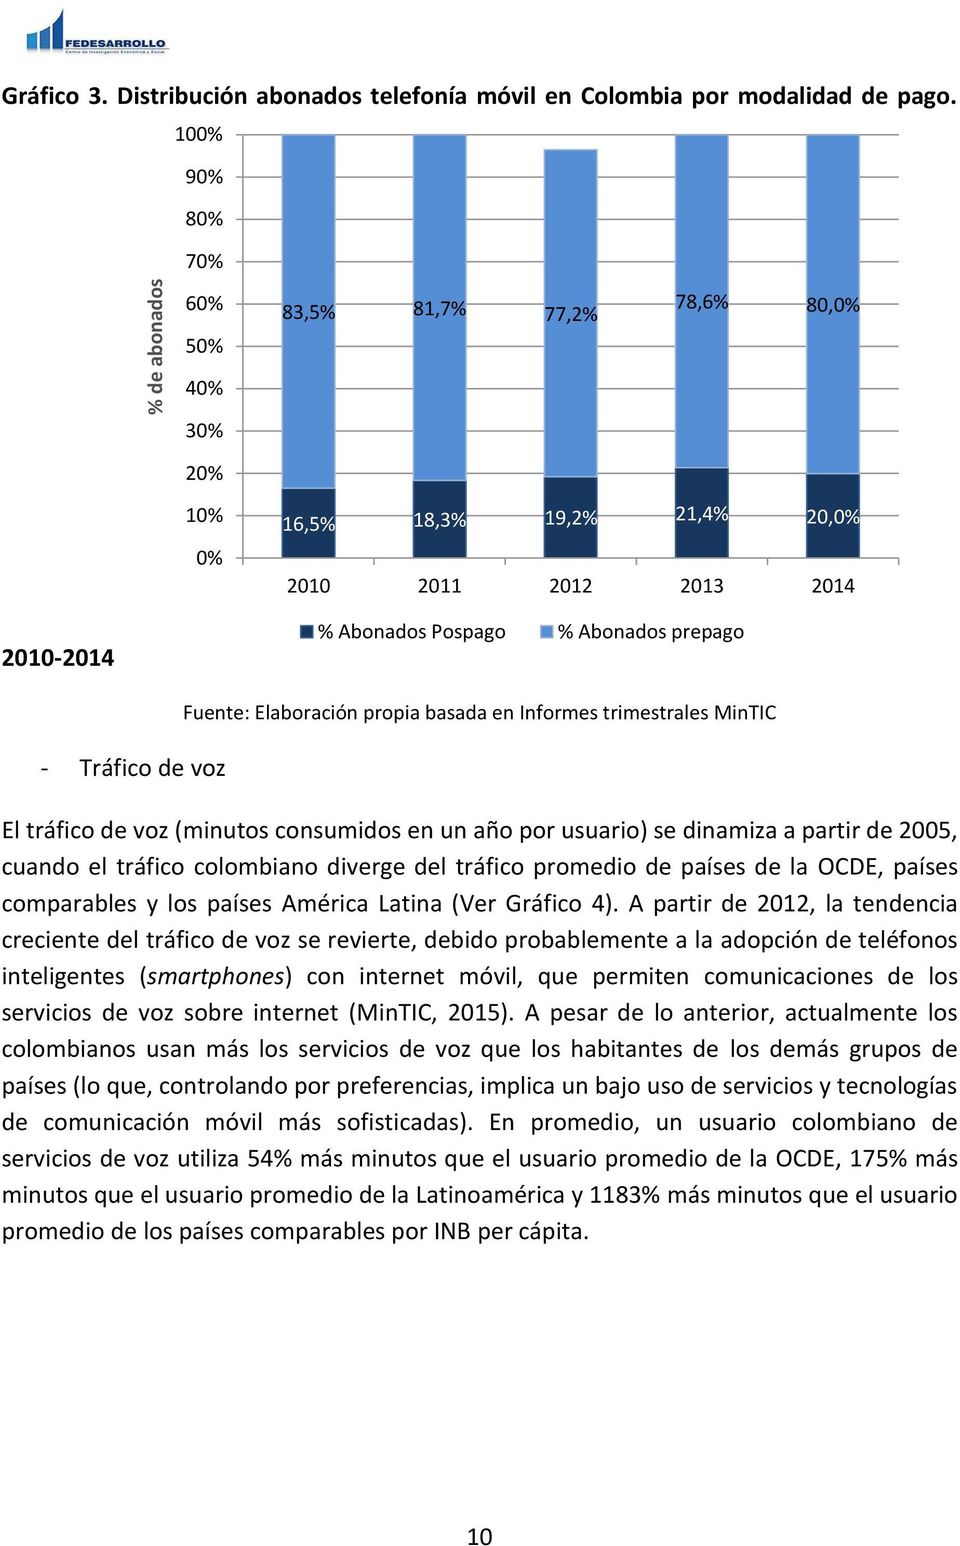 Fuente: Elaboración propia basada en Informes trimestrales MinTIC El tráfico de voz (minutos consumidos en un año por usuario) se dinamiza a partir de 2005, cuando el tráfico colombiano diverge del